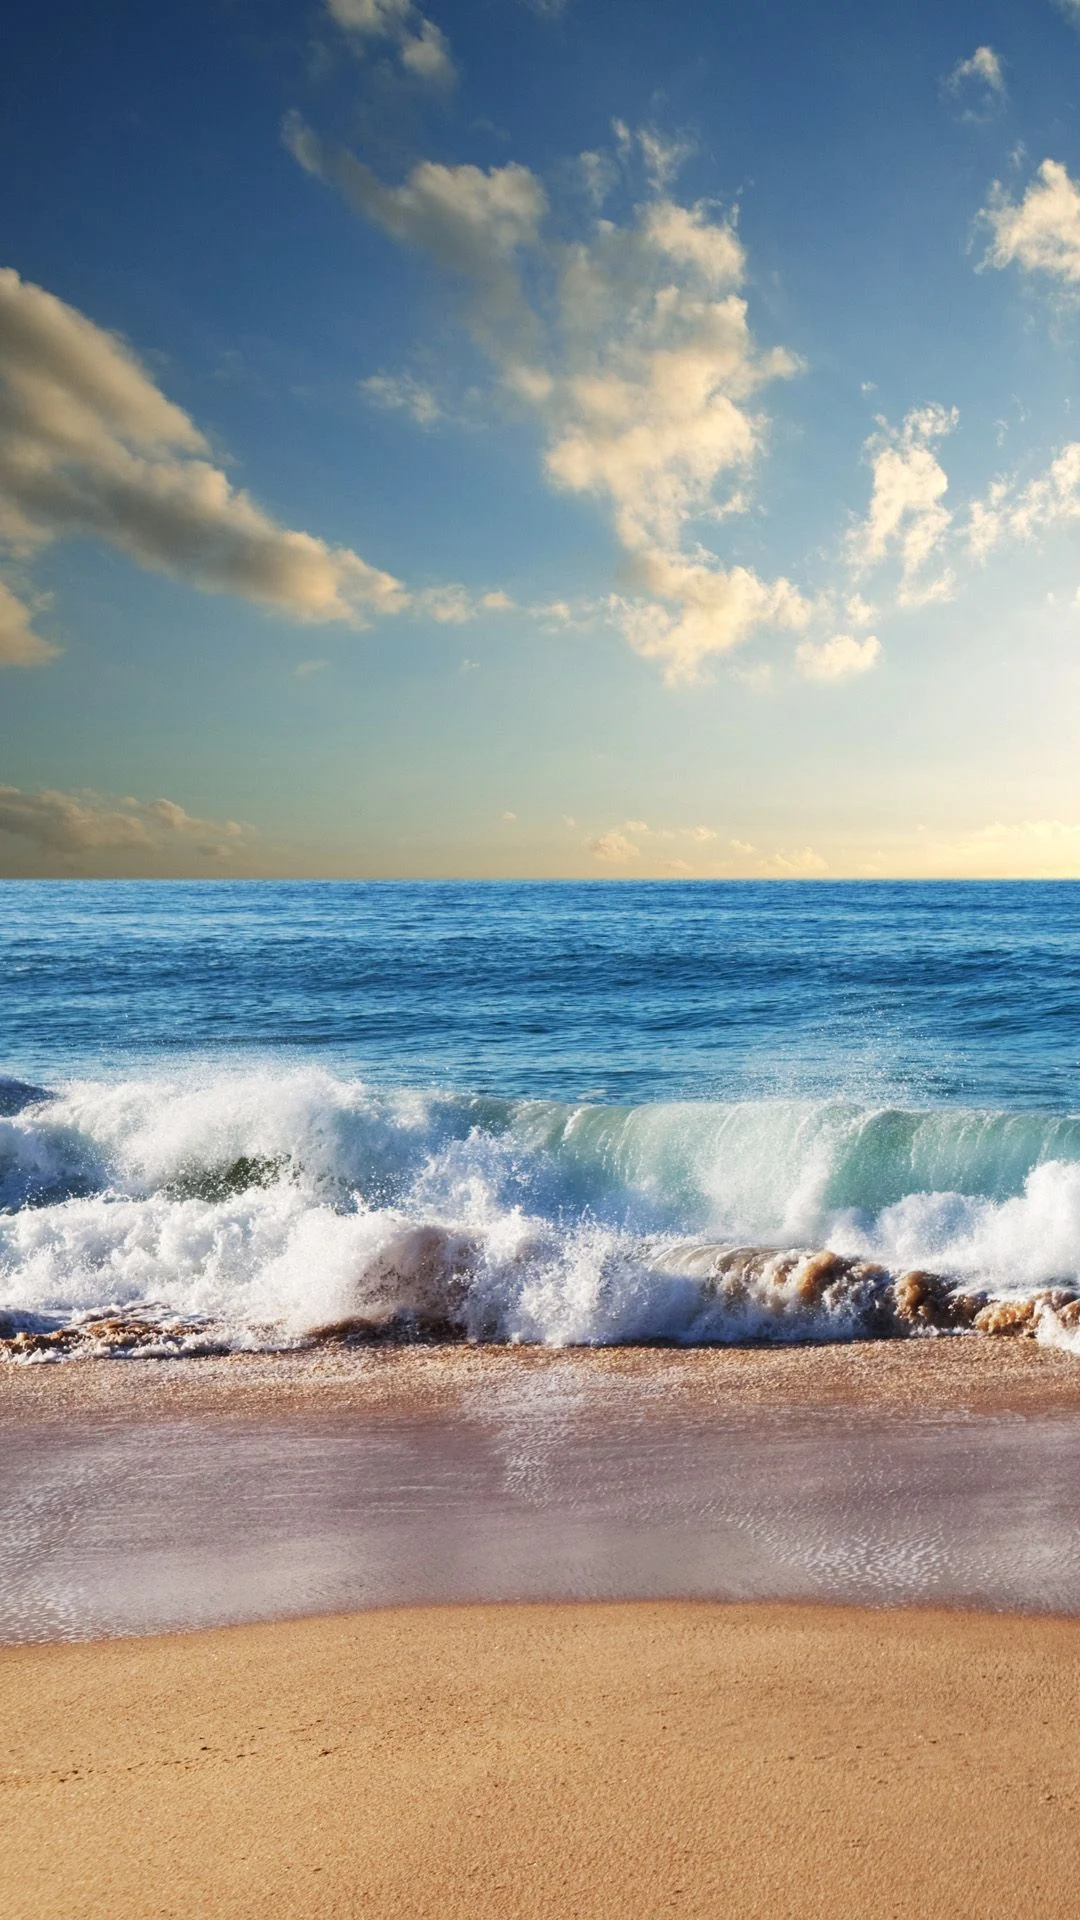 A wave crashes on the beach under a blue sky. - Beach, coast